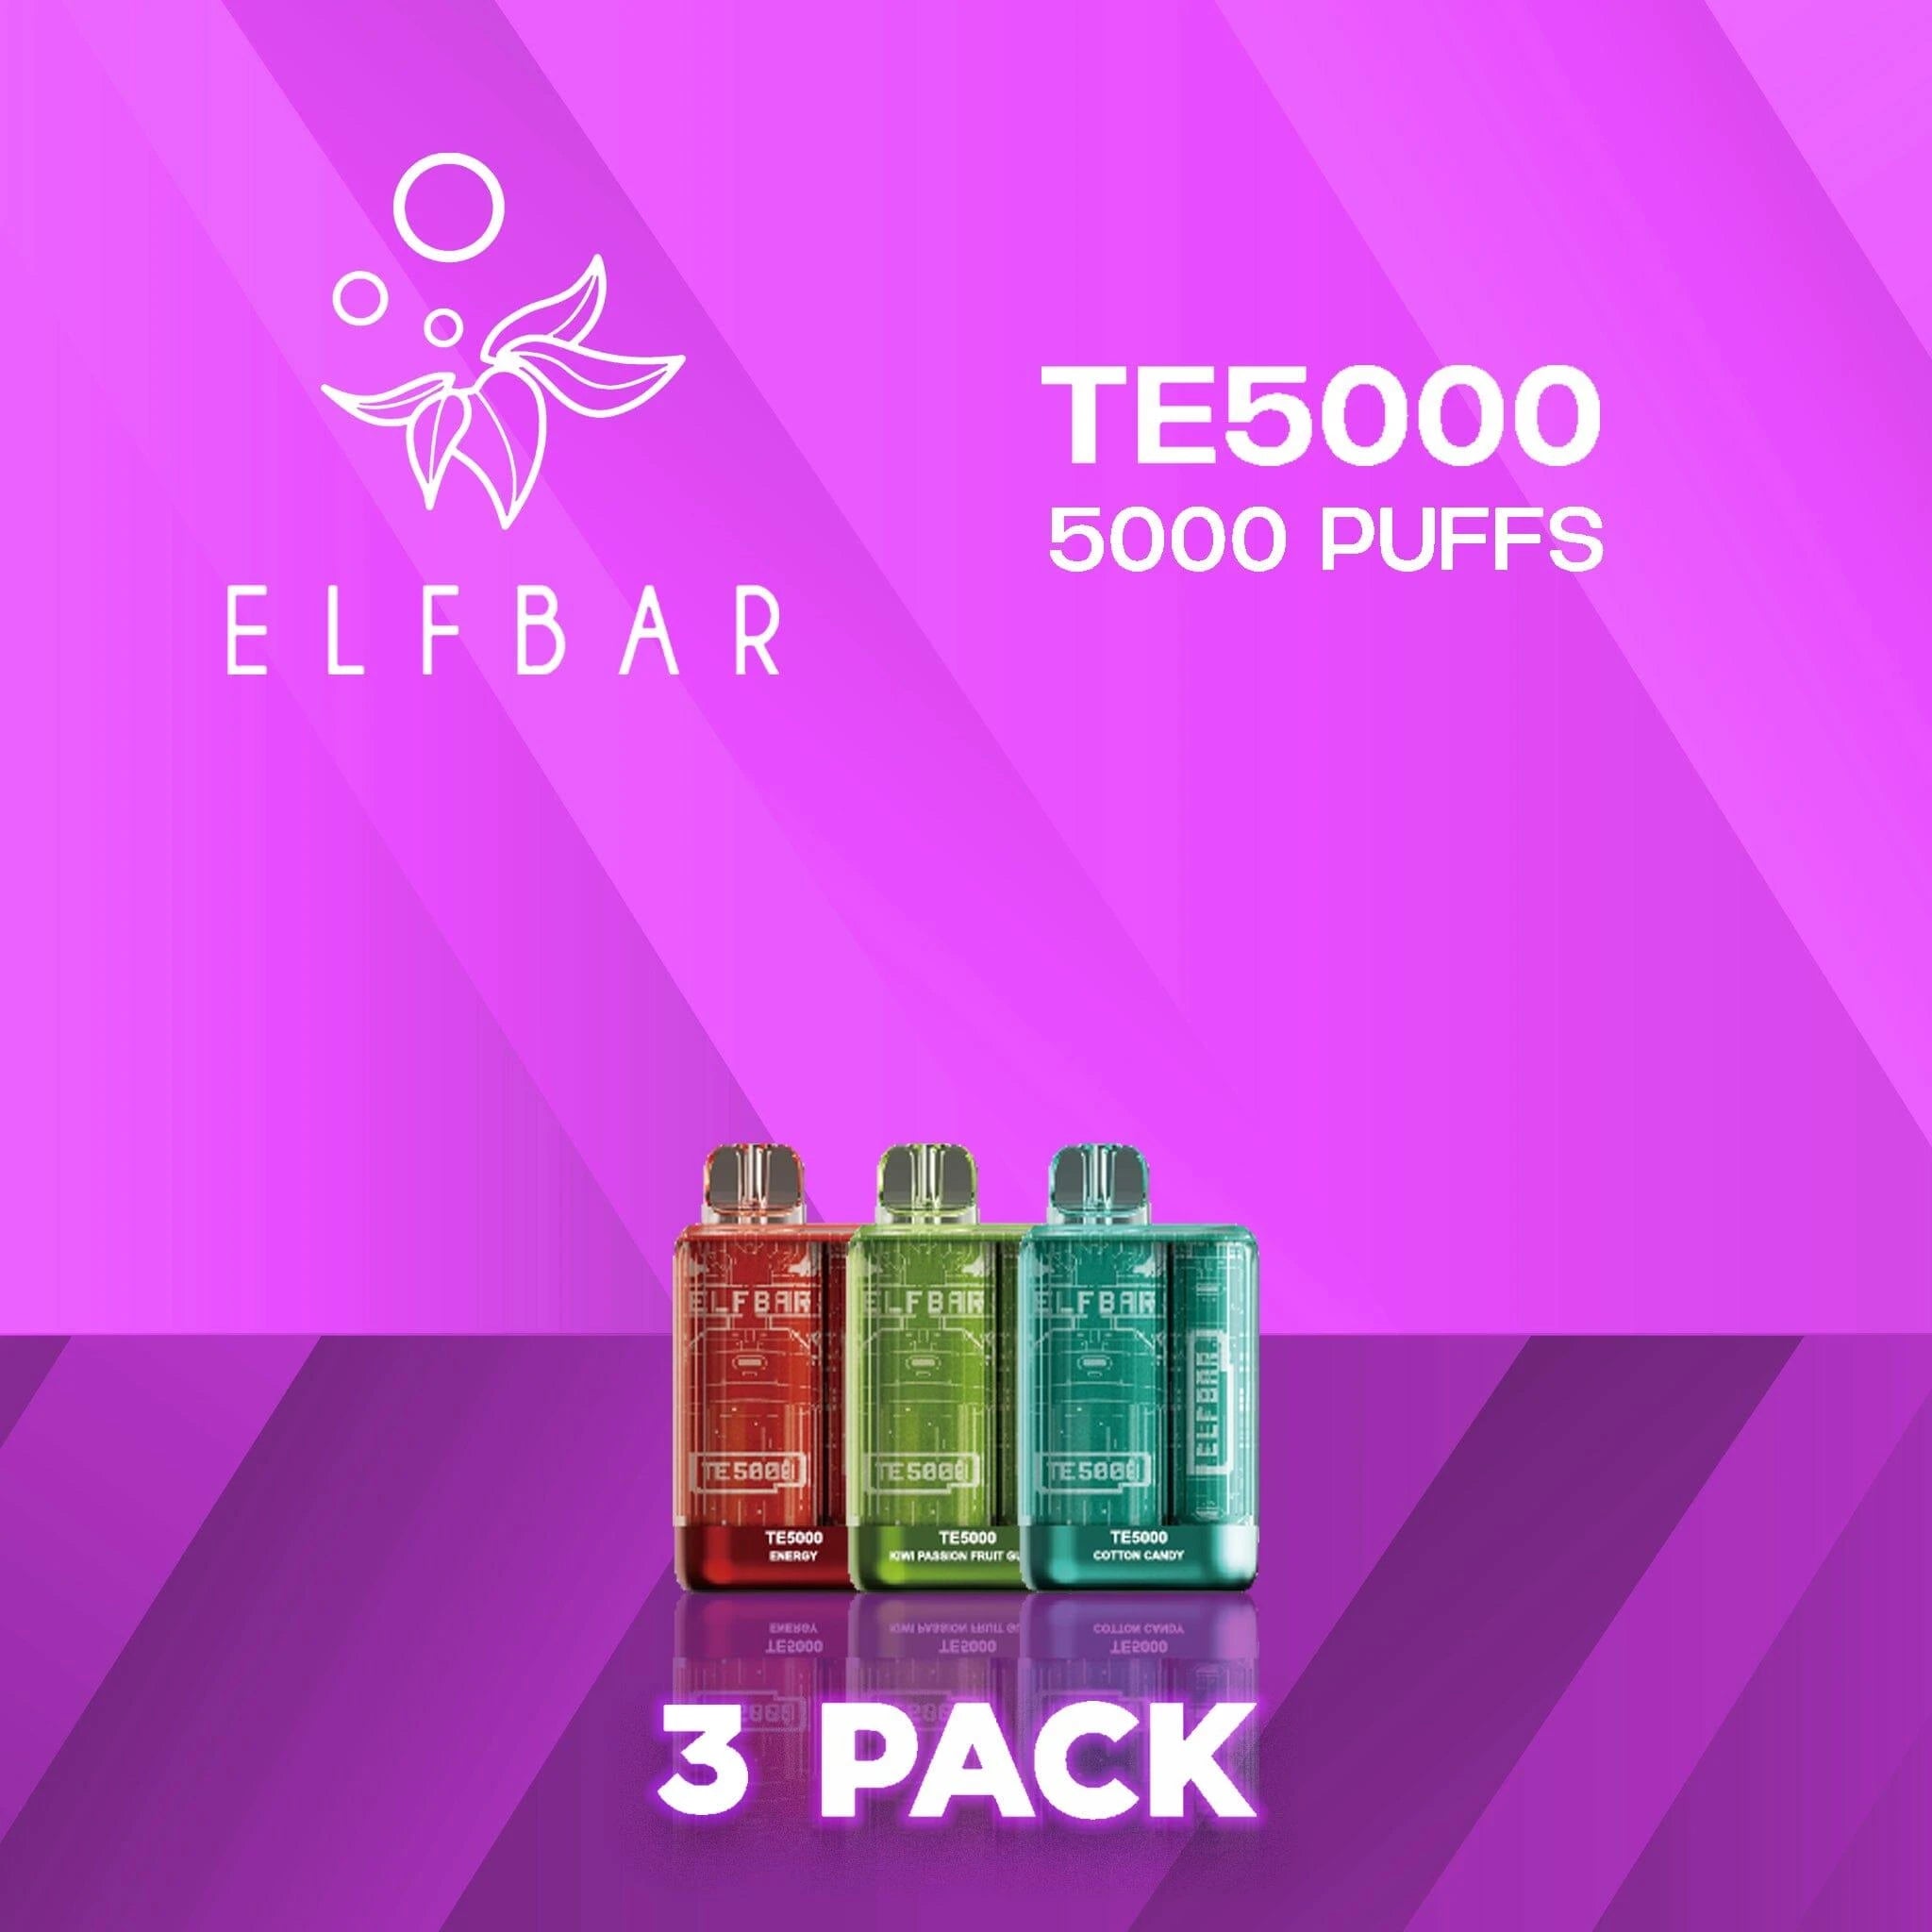 Elf Bar TE5000 Disposable Vape 5000 Puffs - 3 Pack